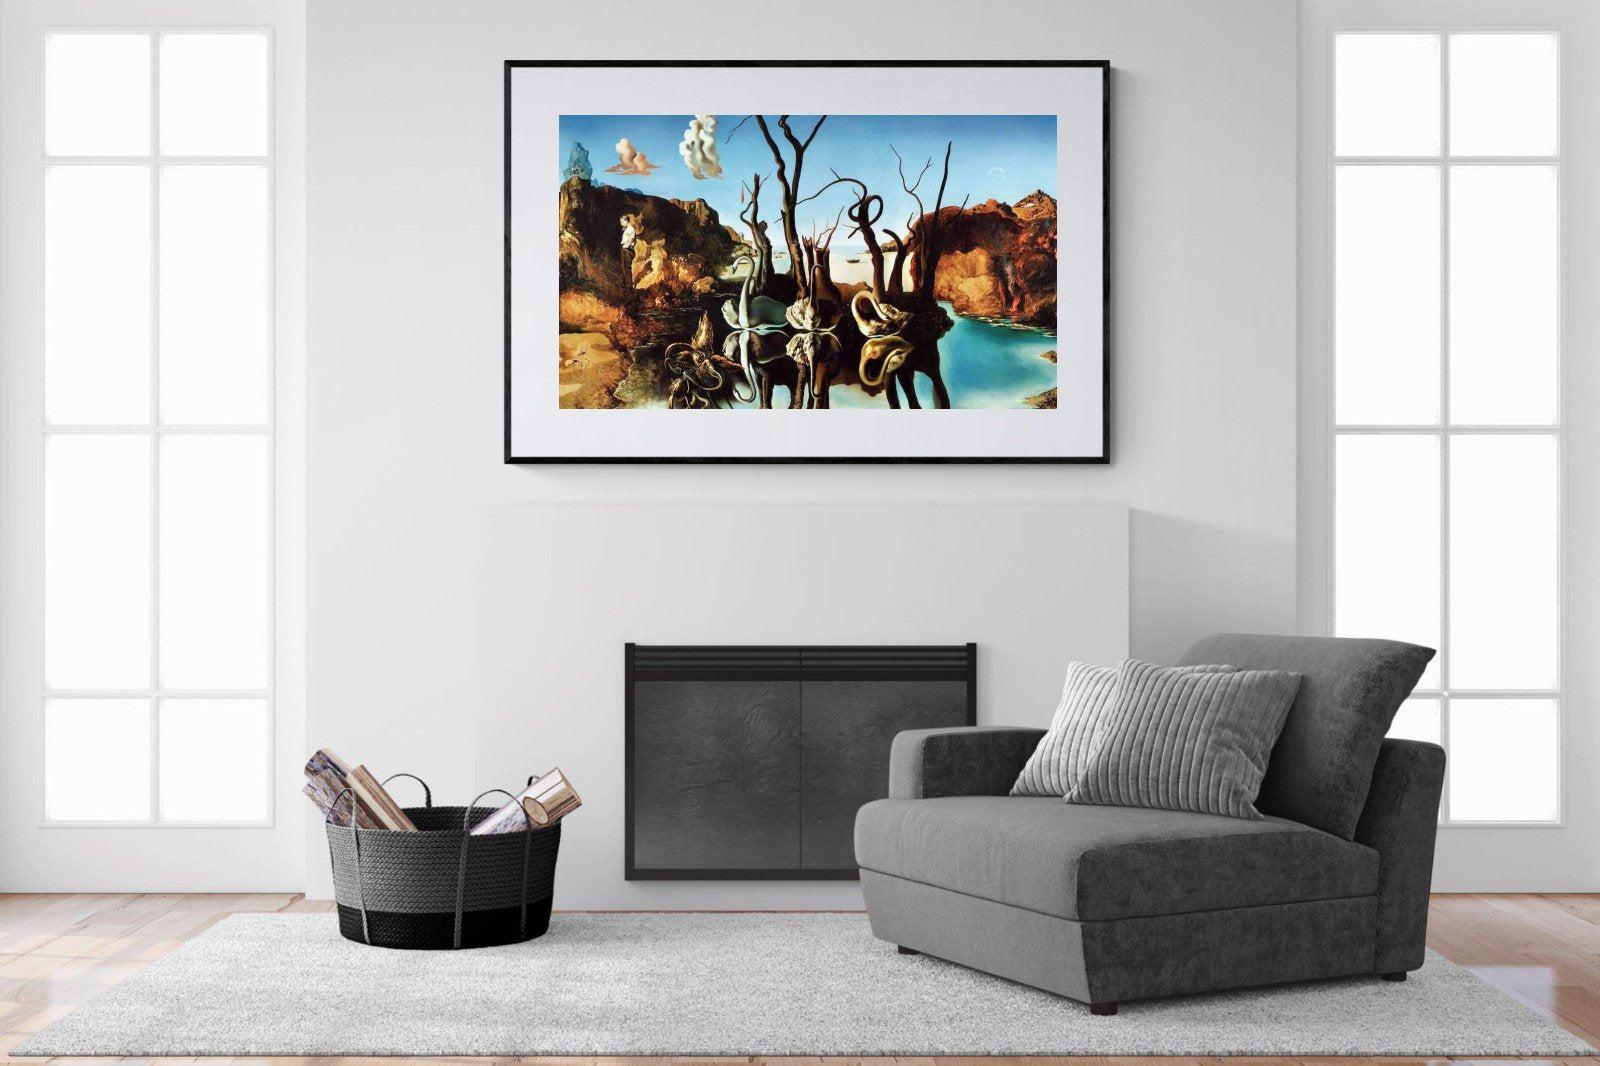 Swans Reflecting Elephants-Wall_Art-150 x 100cm-Framed Print-Black-Pixalot